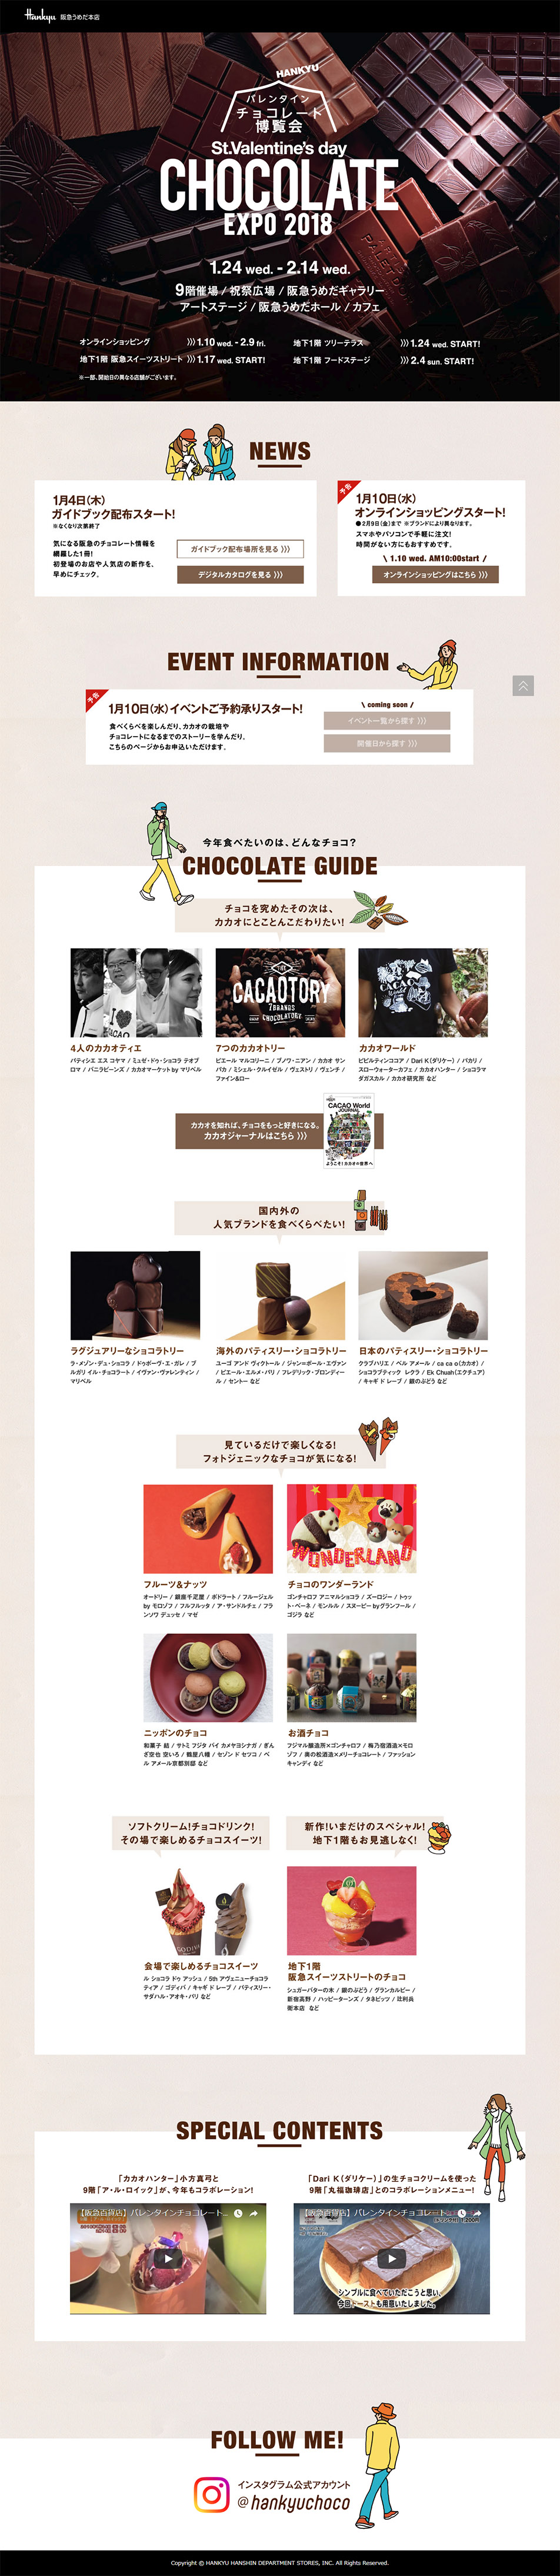 阪急バレンタインチョコレート博覧会 2018_pc_1